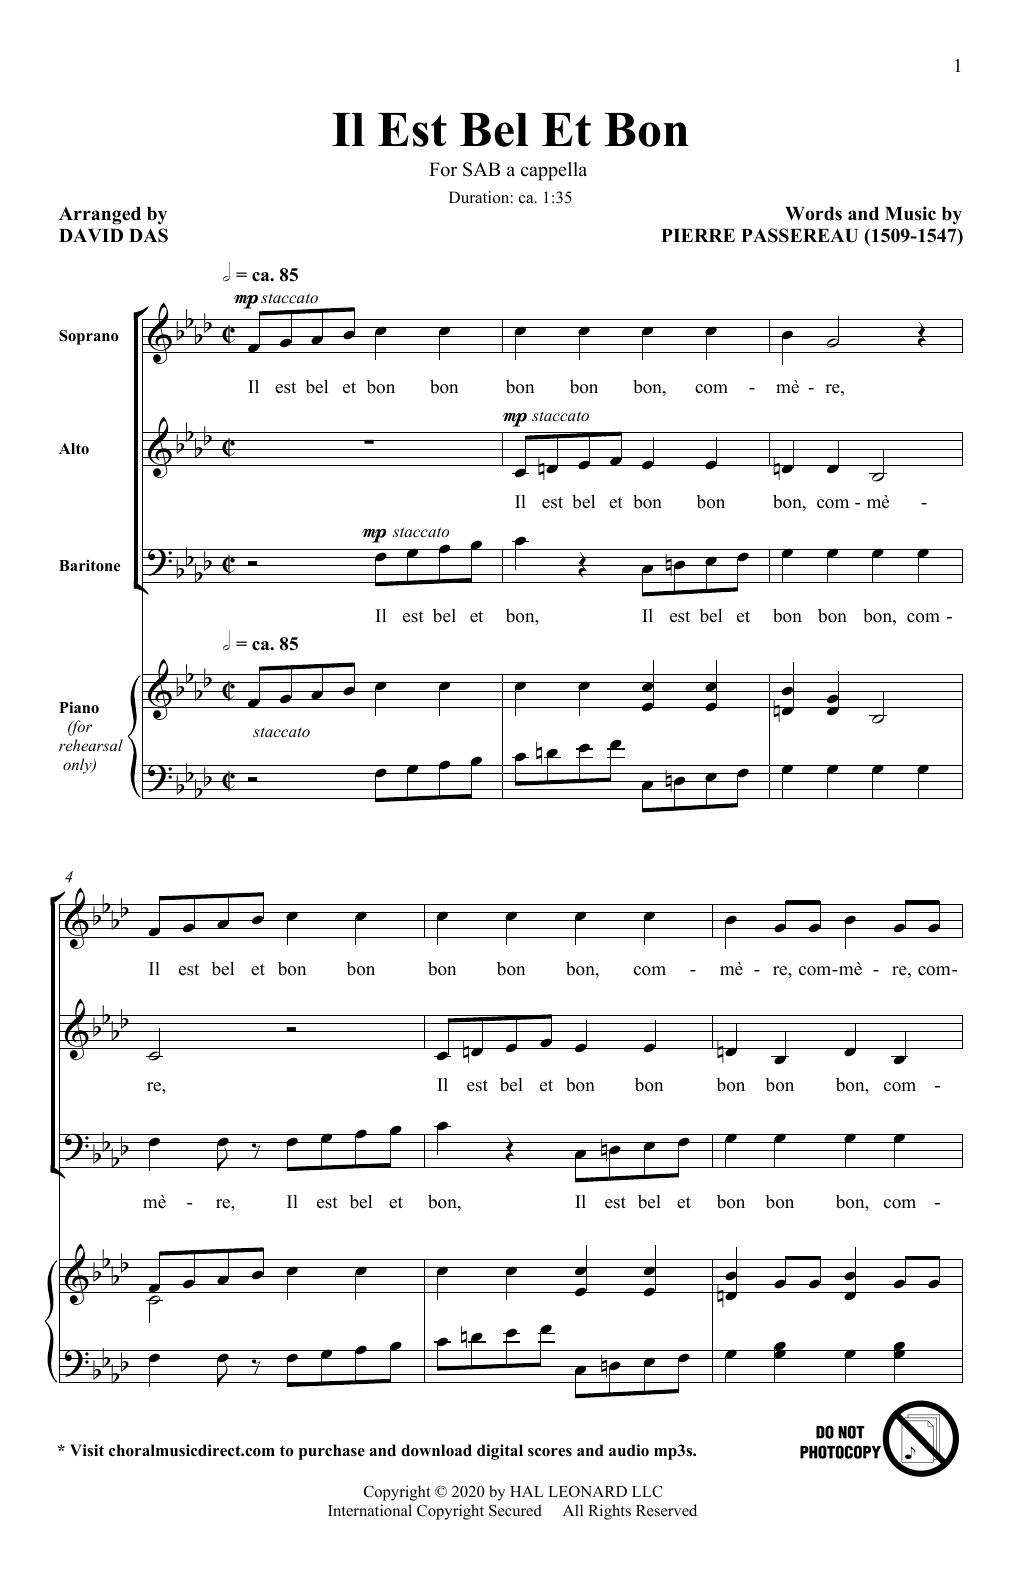 Pierre Passereau Il Est Bel Et Bon (arr. David Das) Sheet Music Notes & Chords for SAB Choir - Download or Print PDF